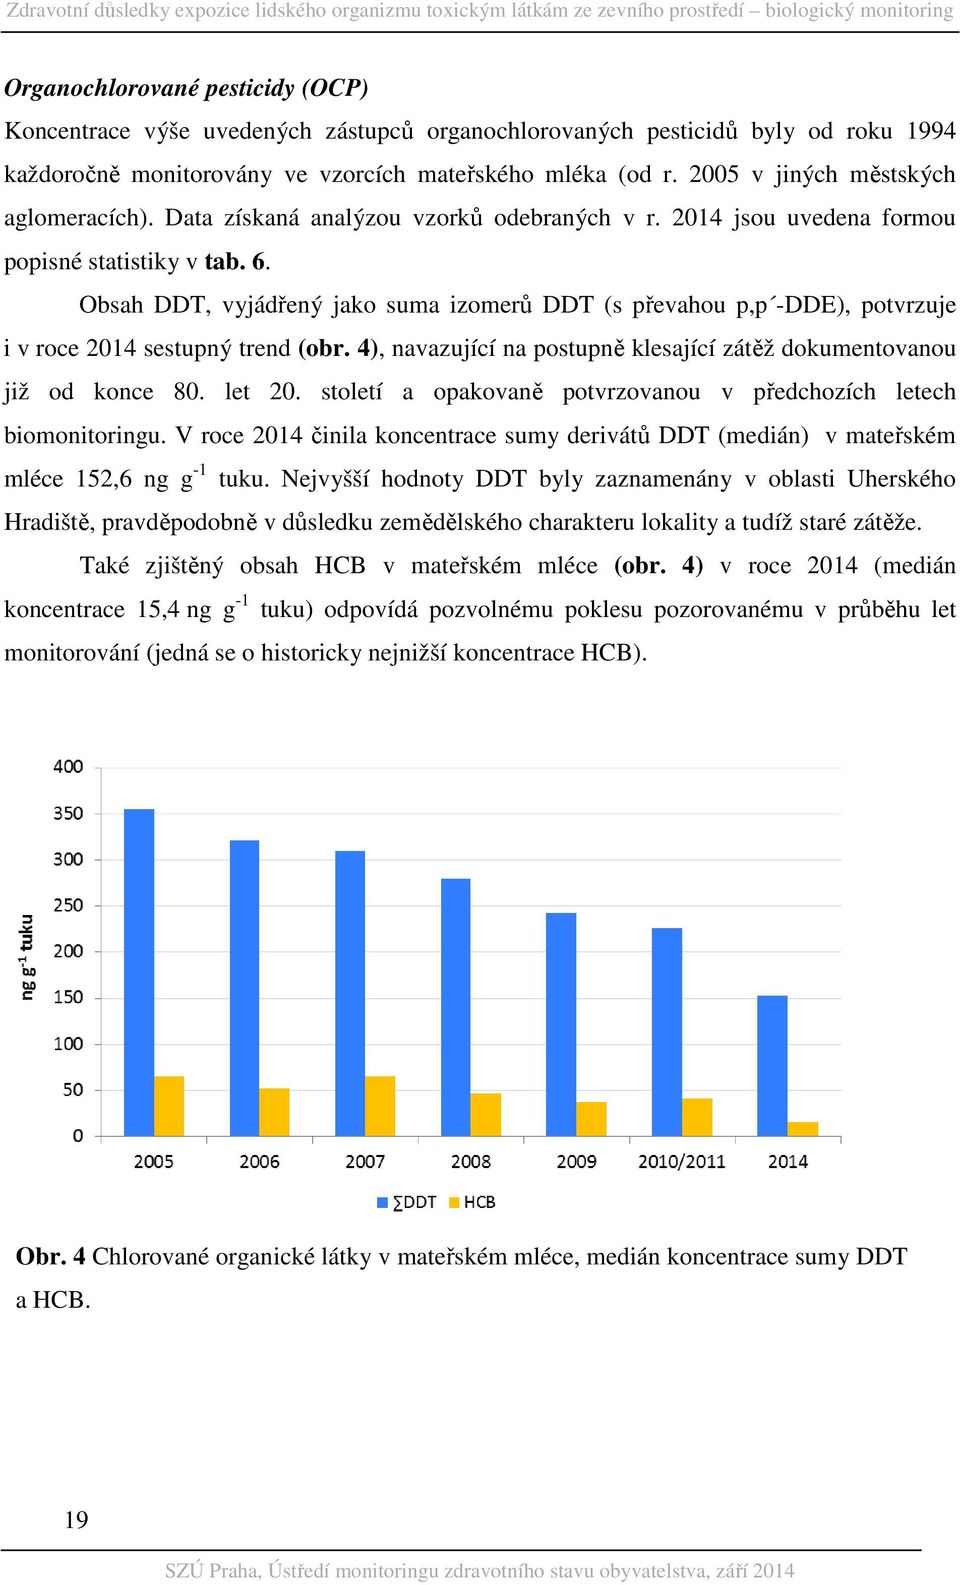 Obsah DDT, vyjádřený jako suma izomerů DDT (s převahou p,p -DDE), potvrzuje i v roce 2014 sestupný trend (obr. 4), navazující na postupně klesající zátěž dokumentovanou již od konce 80. let 20.